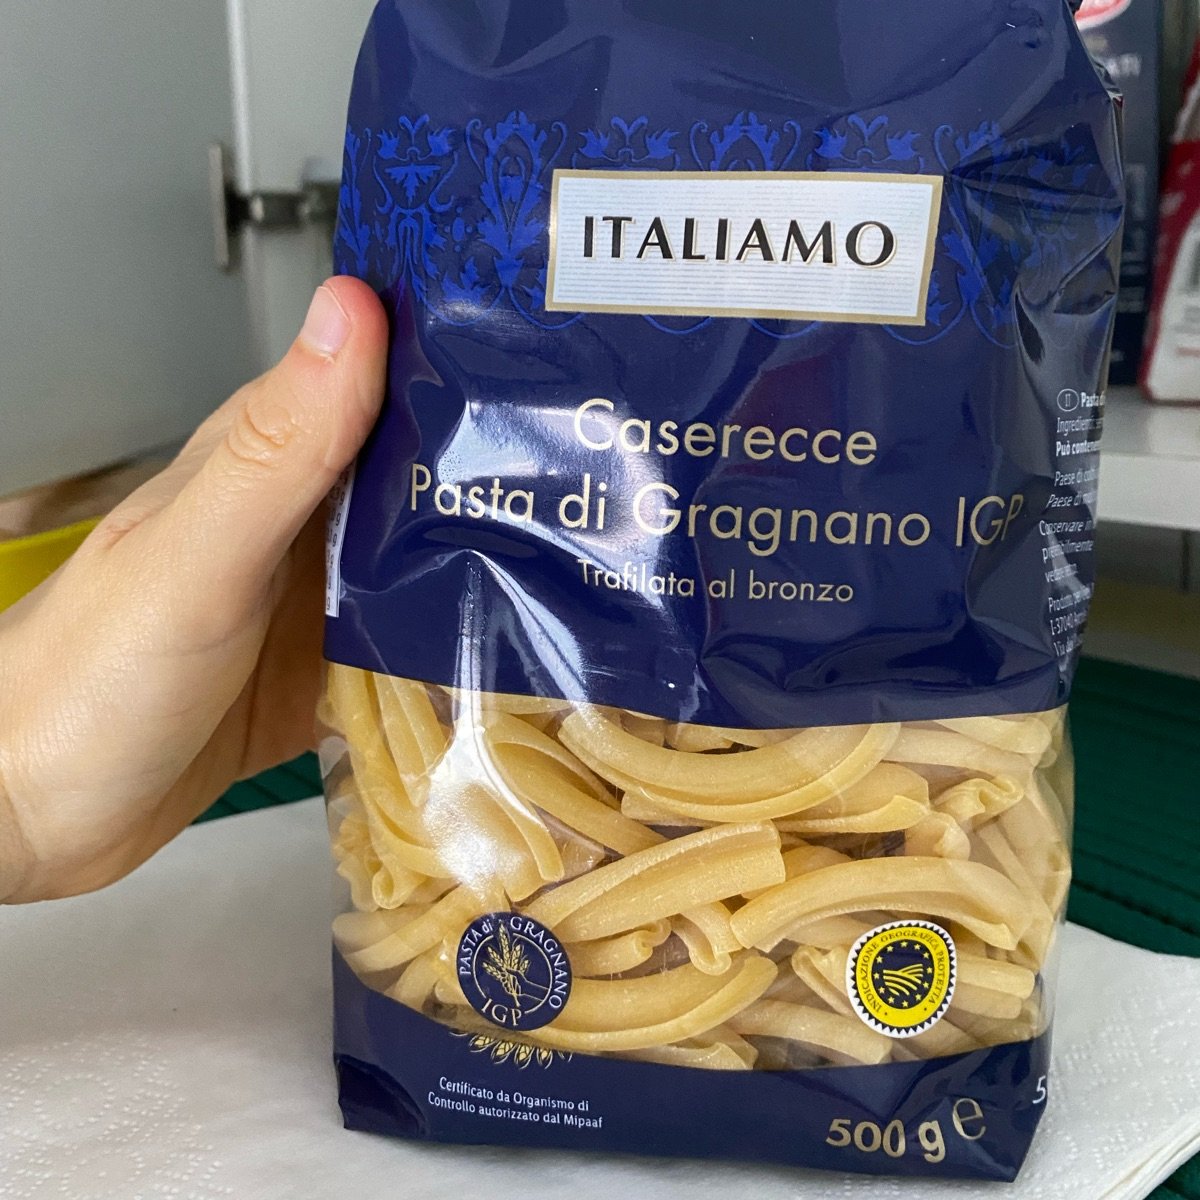 abillion | Review Italiamo Pasta